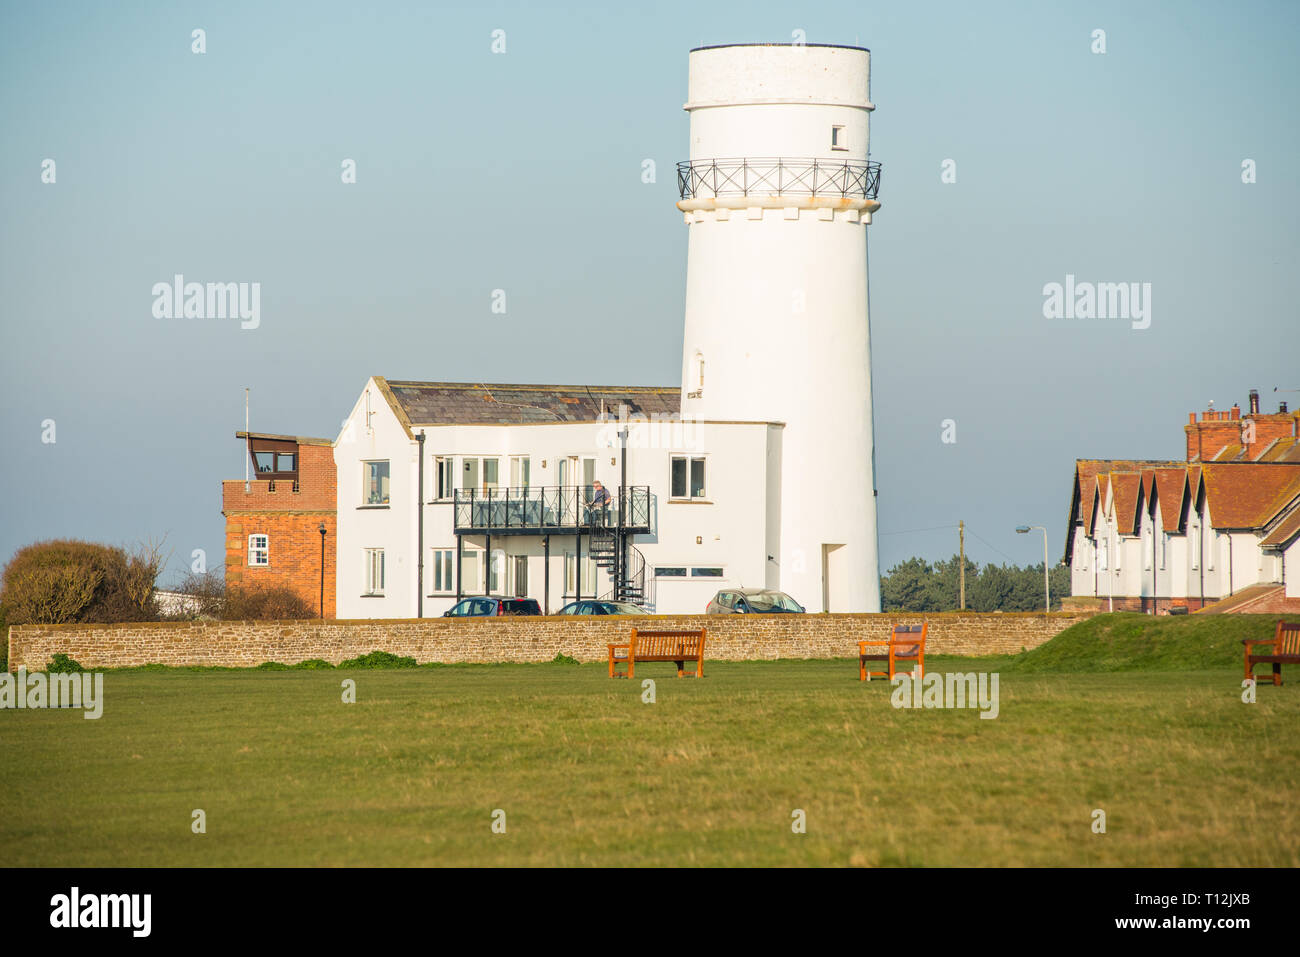 Le vieux phare en haut de la falaise à Hunstanton, maintenant utilisé pour location de vacances. La côte de Norfolk, Angleterre, Royaume-Uni. Banque D'Images